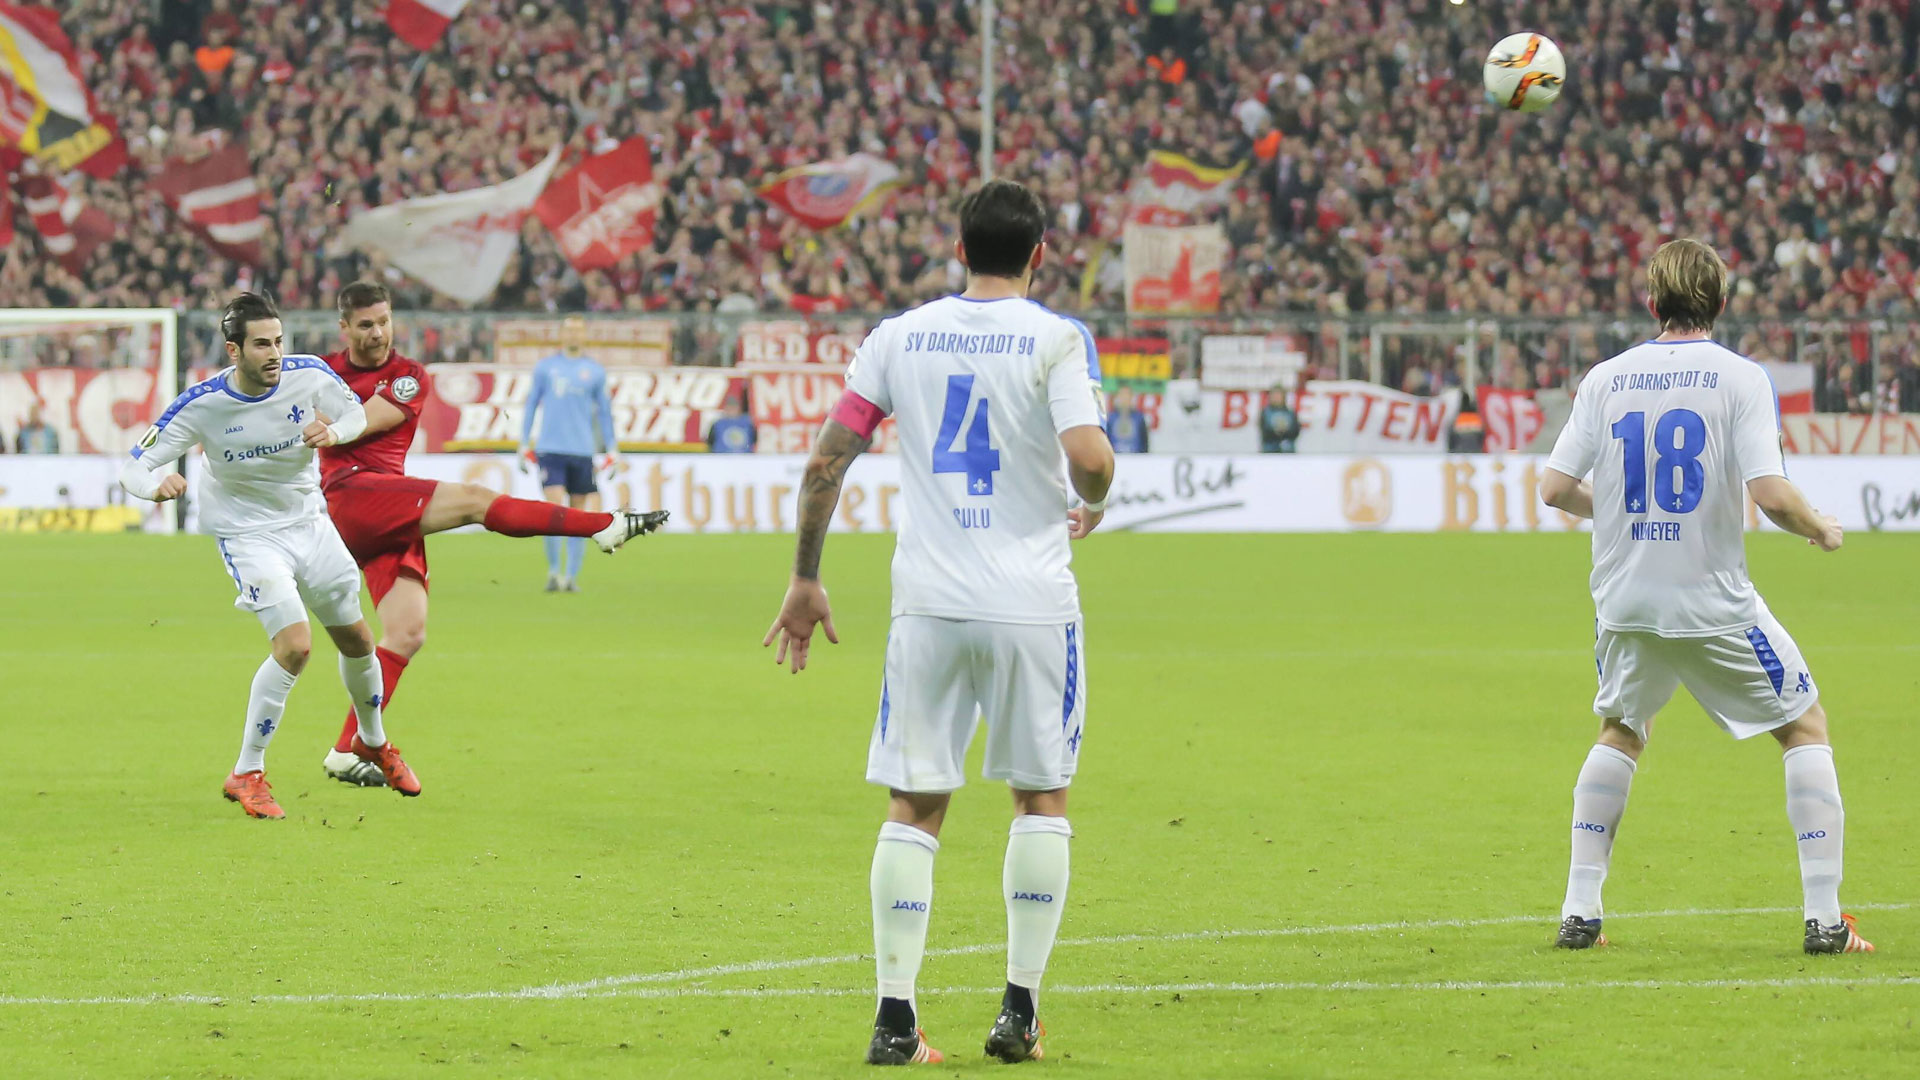 Xabi Alonso vom FC Bayern München trifft im DFB-Pokalspiel gegen den SV Darmstadt 98 zum 1:0 Endstand.